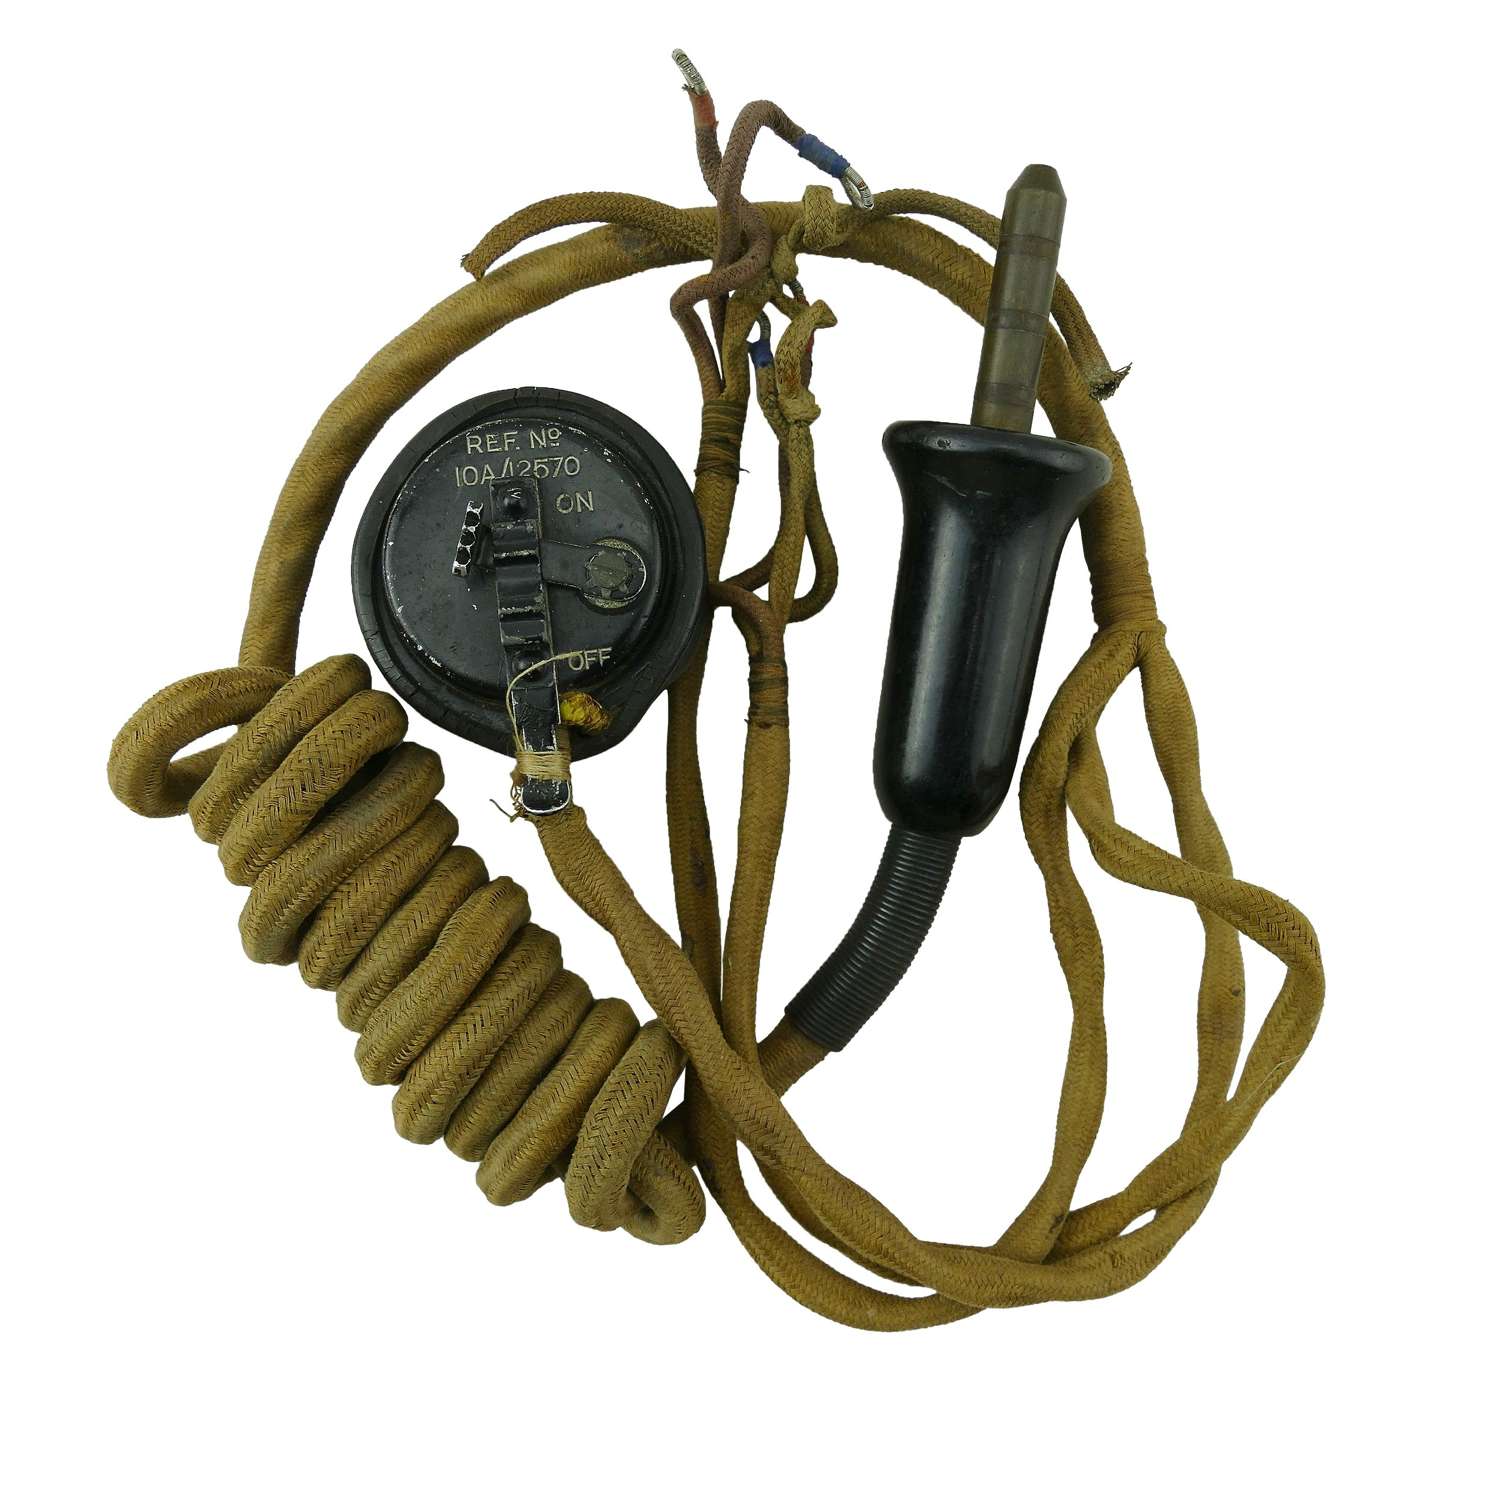 RAF external flying helmet wiring loom c/w type 25 microphone